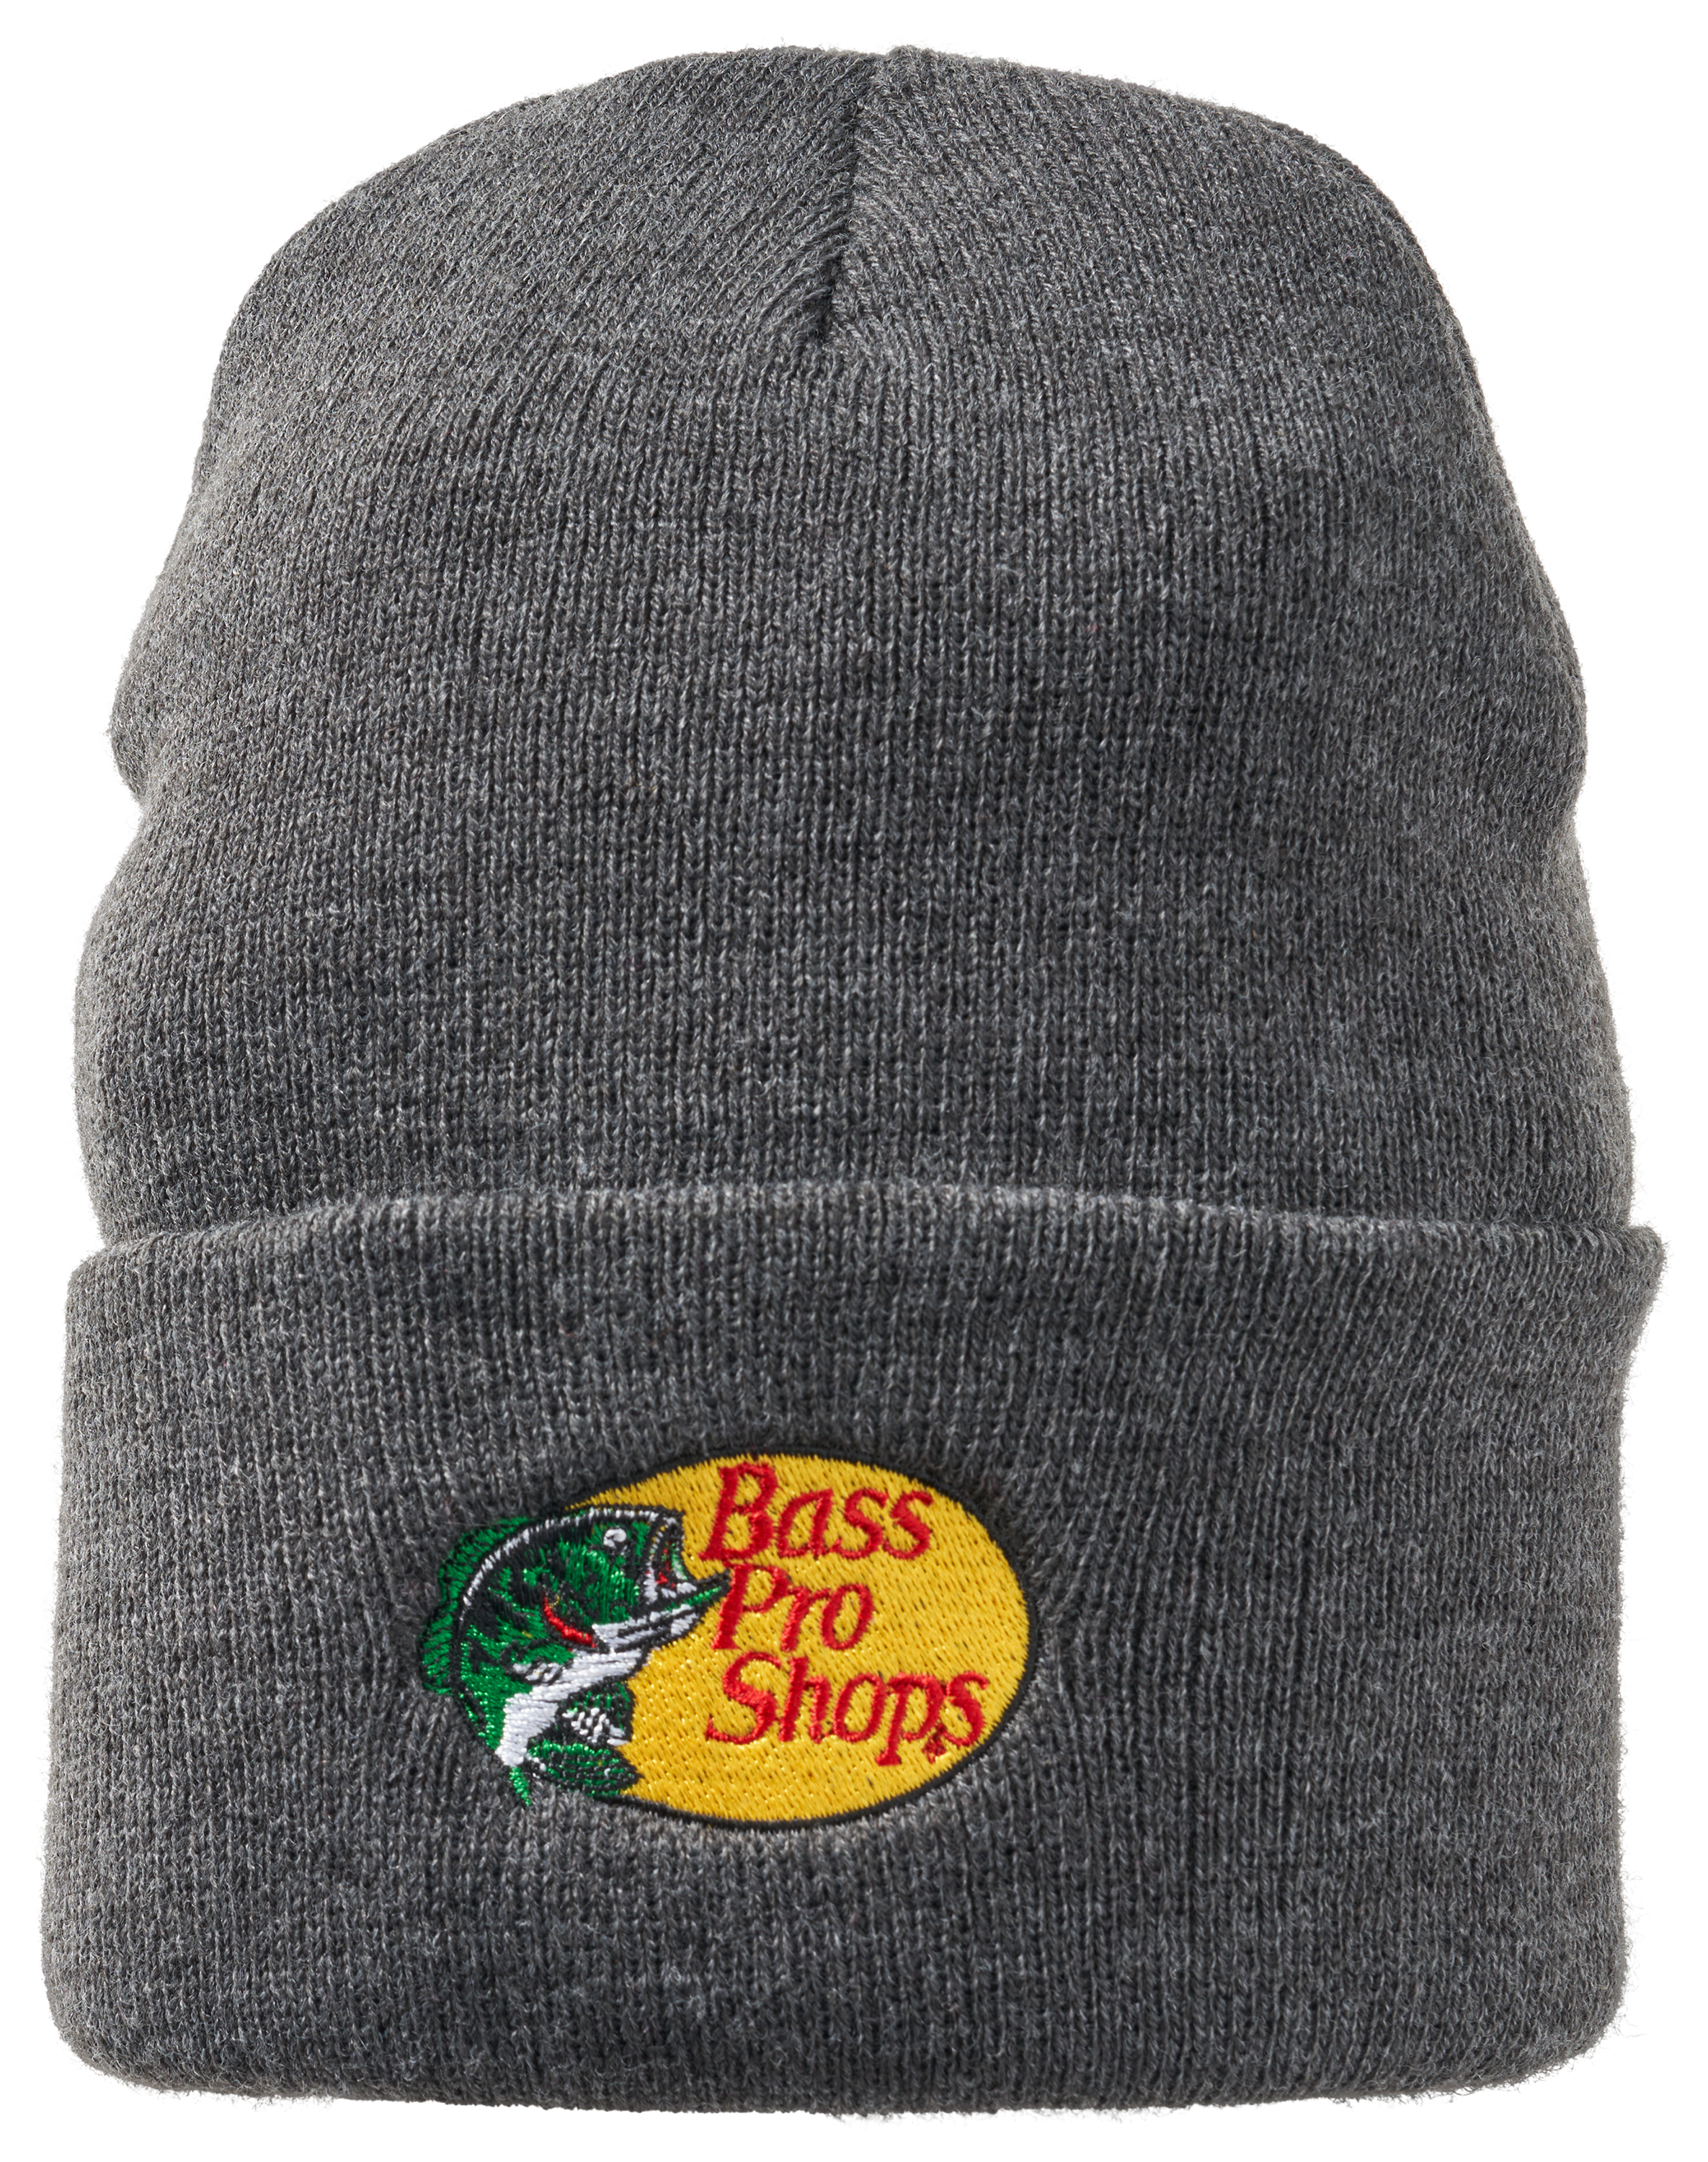 Men's Bass Pro Shops Hats